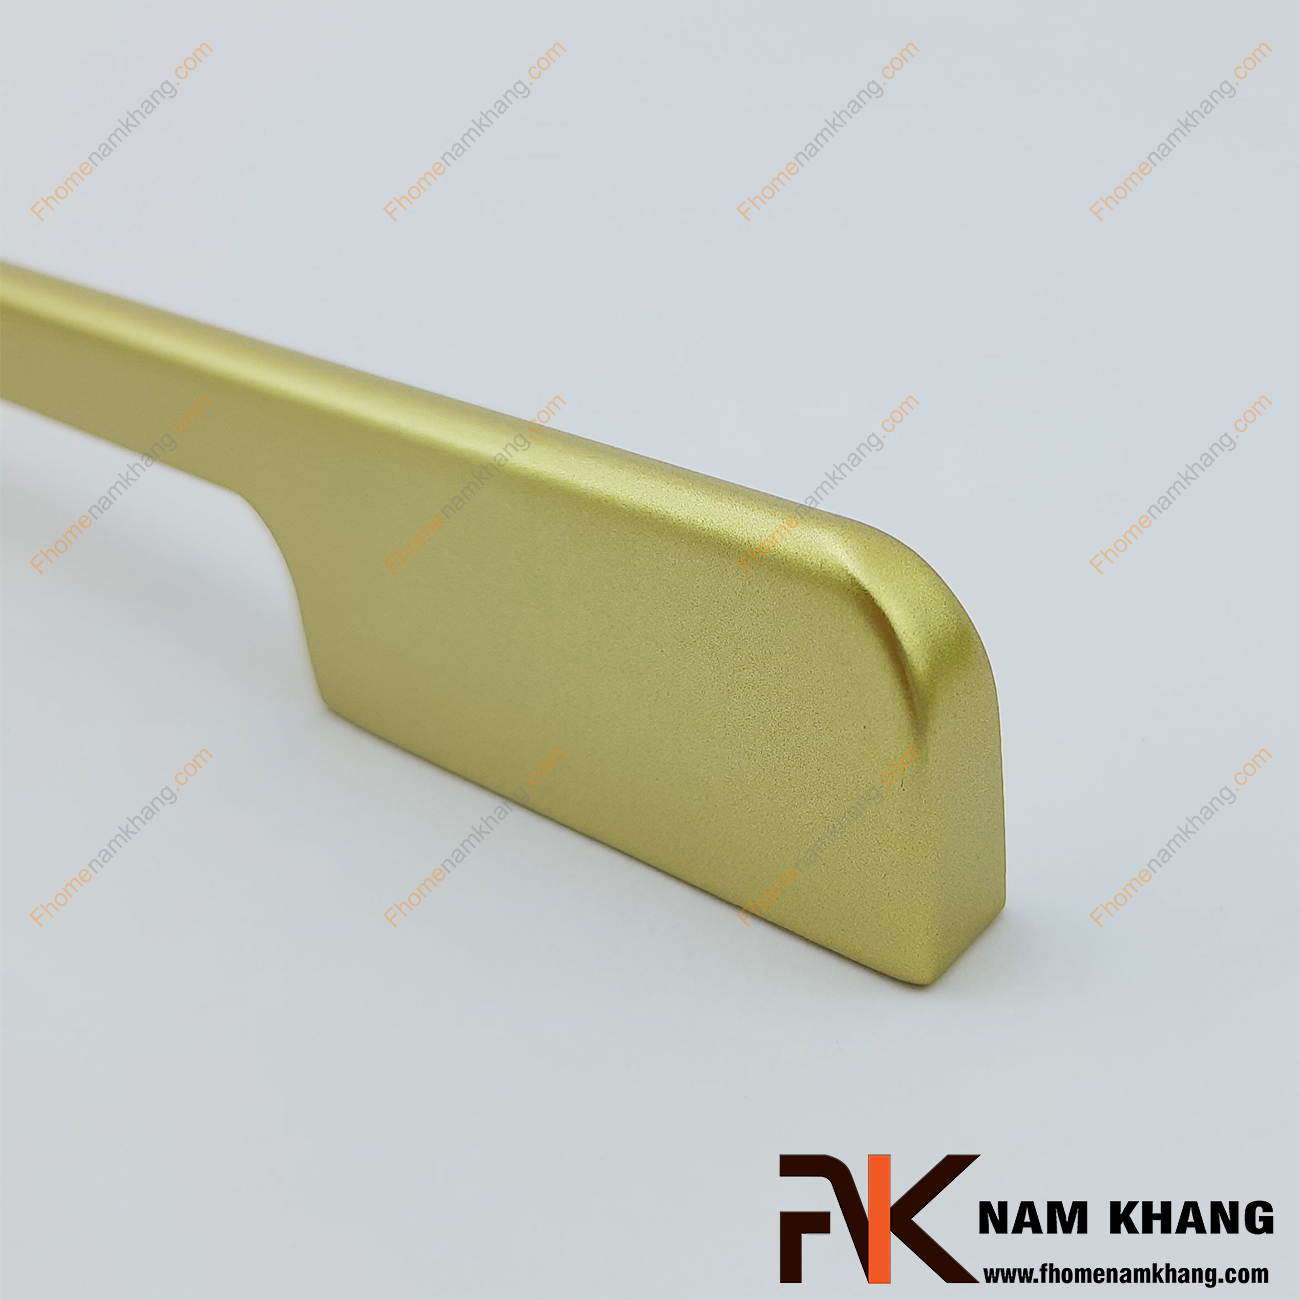 Tay nắm tủ dạng thanh màu vàng NK260-V là một dòng tay nắm tủ theo bộ với nhiều kích thước được sử dụng trên một hoặc nhiều loại phong cách tủ khác nhau tùy nhu cầu thiết kế